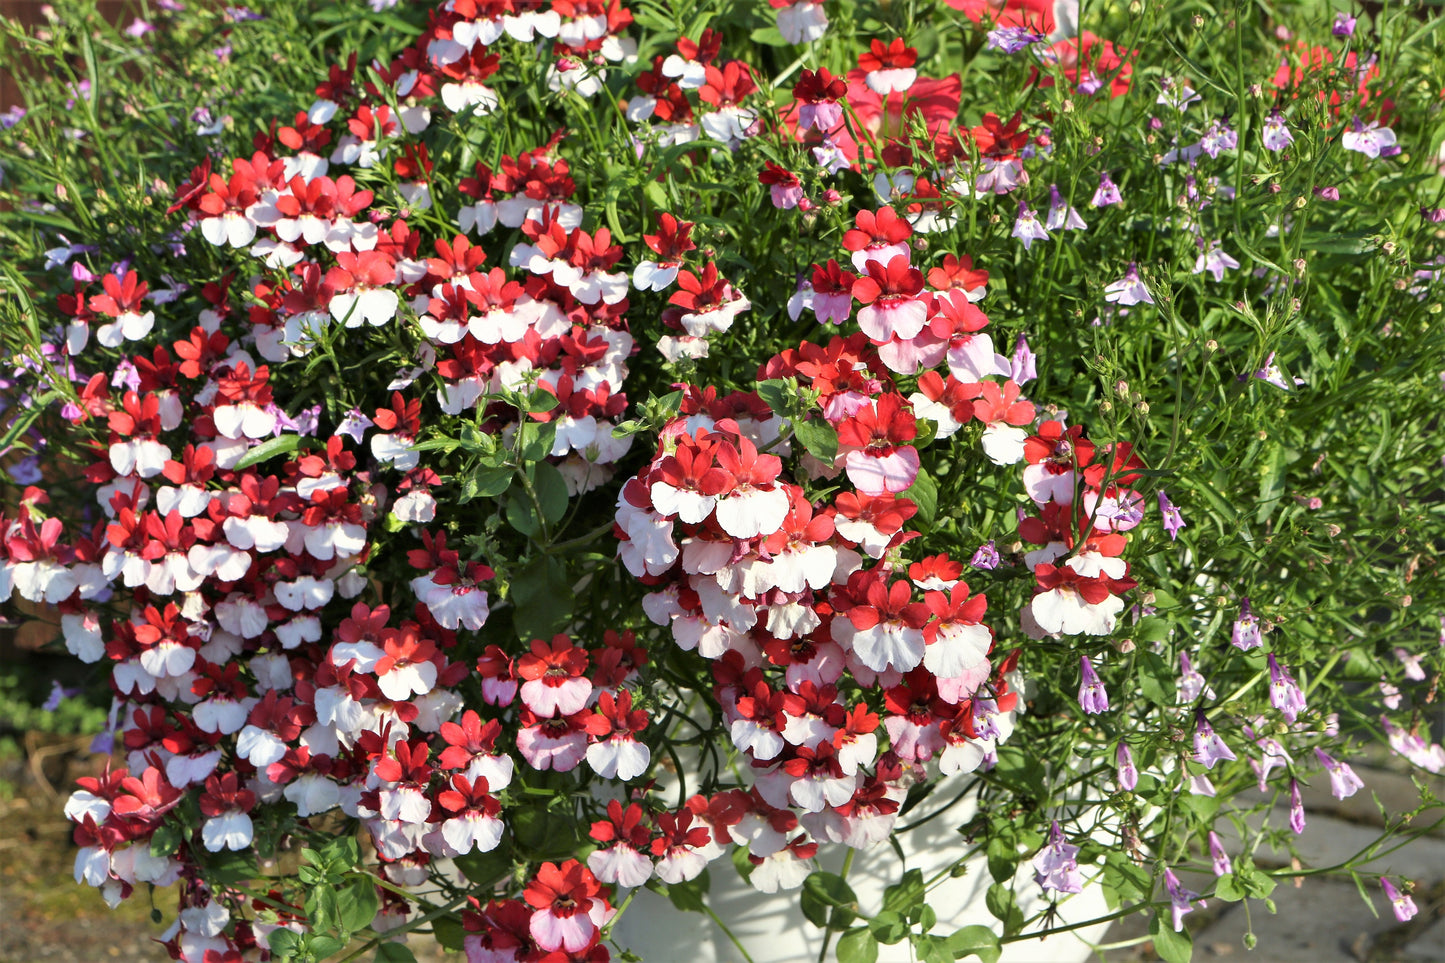 50 RED & WHITE NEMESIA Strumosa Danish Flag Fragrant Bicolor Flower Seeds